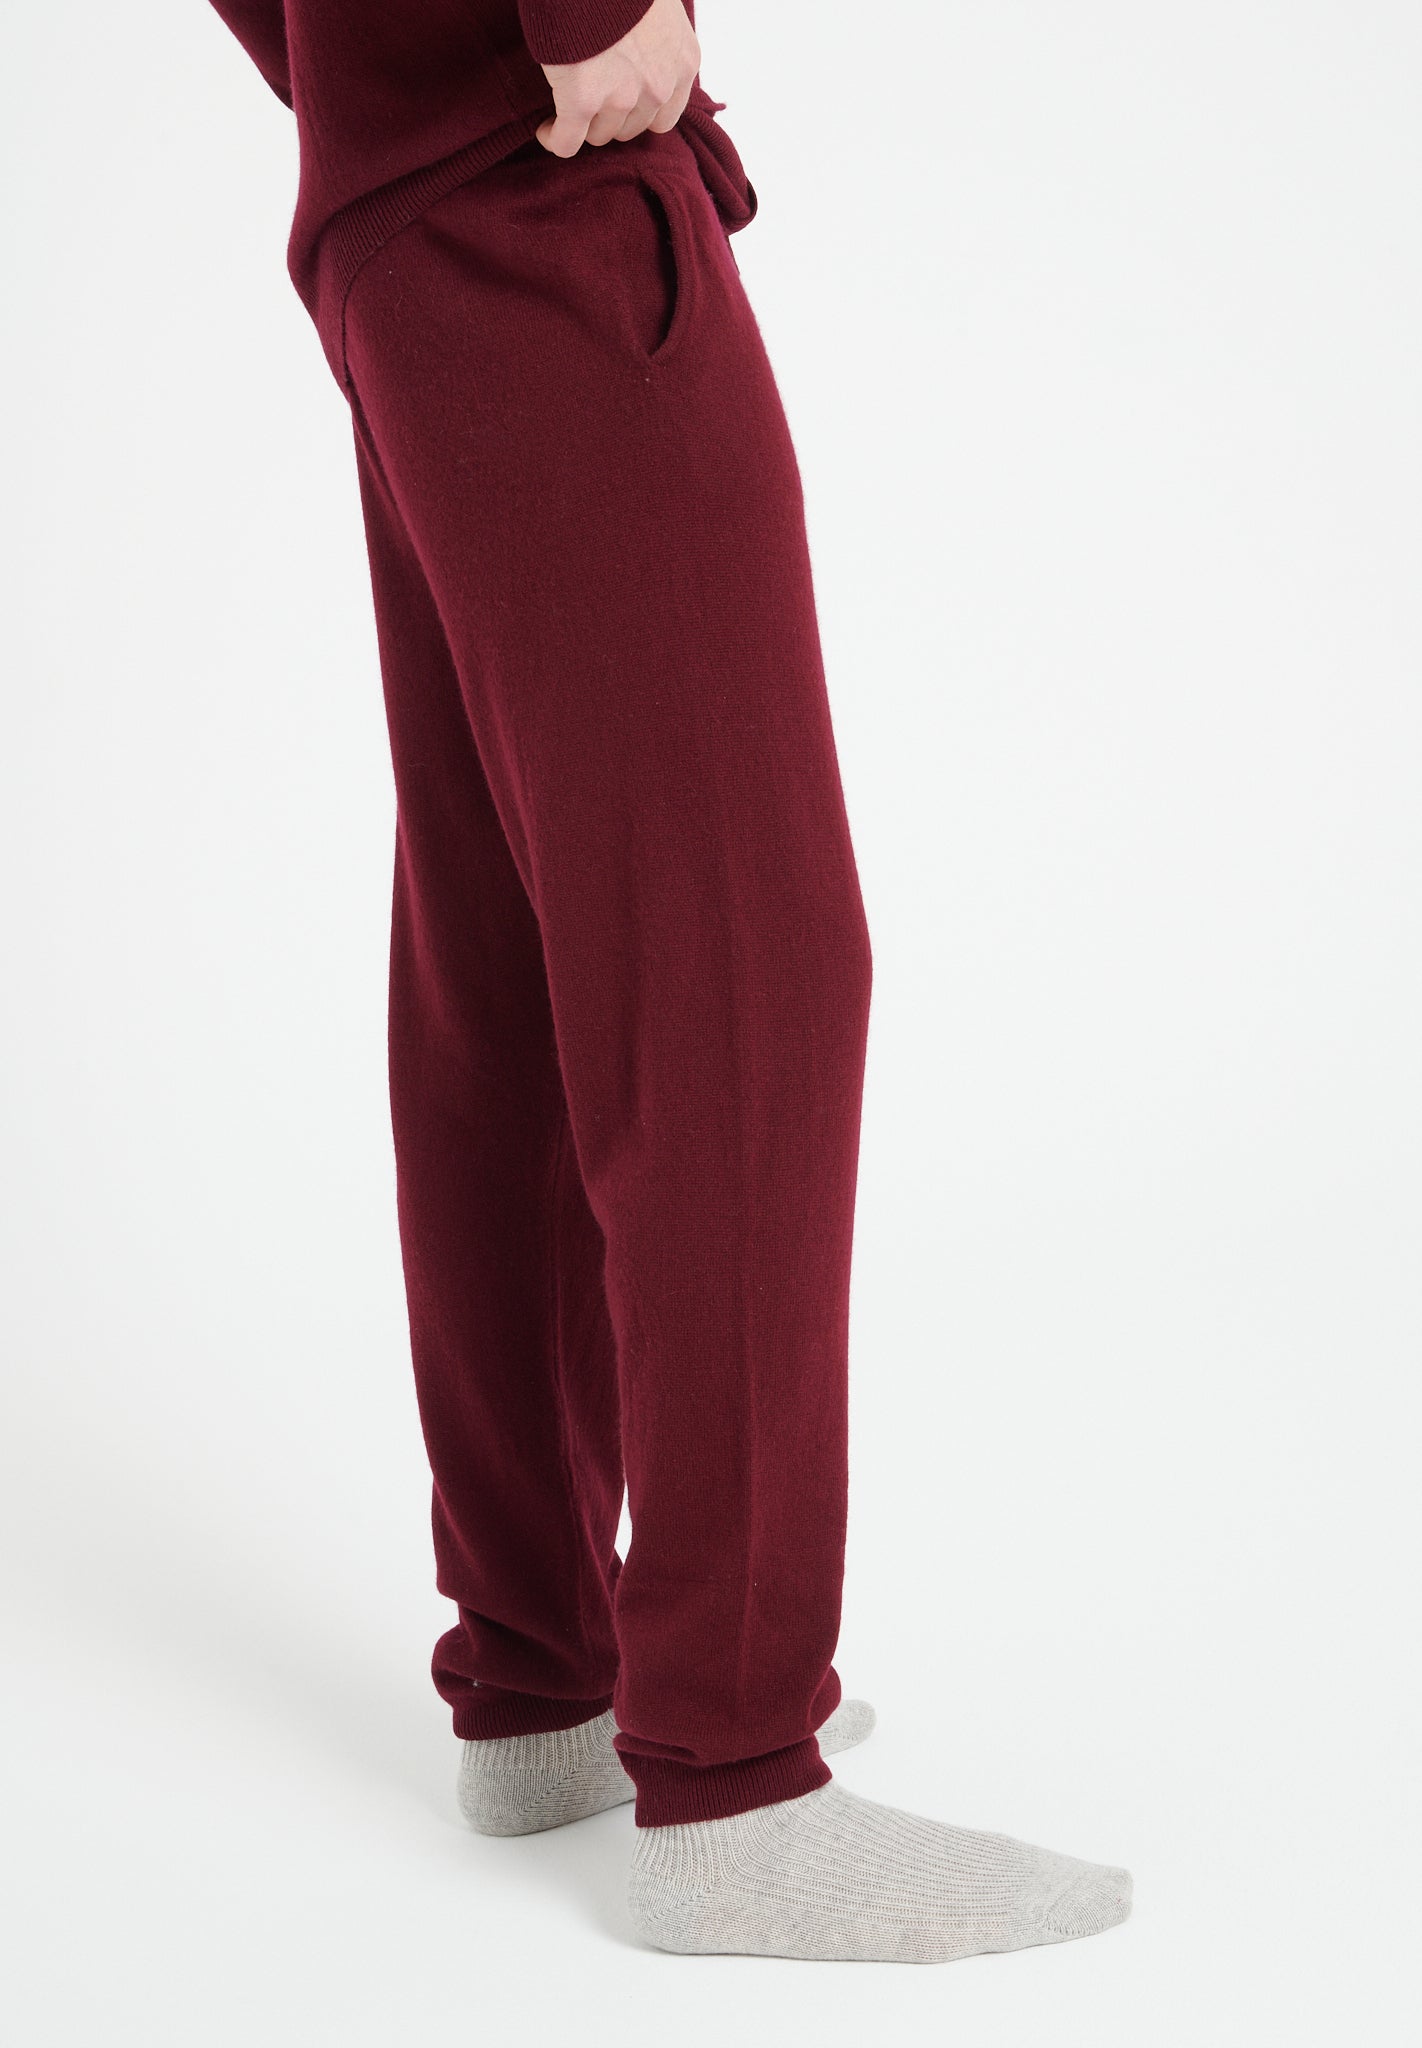 LUKE 7 Pantalon de survêtement en cachemire rouge bordeaux